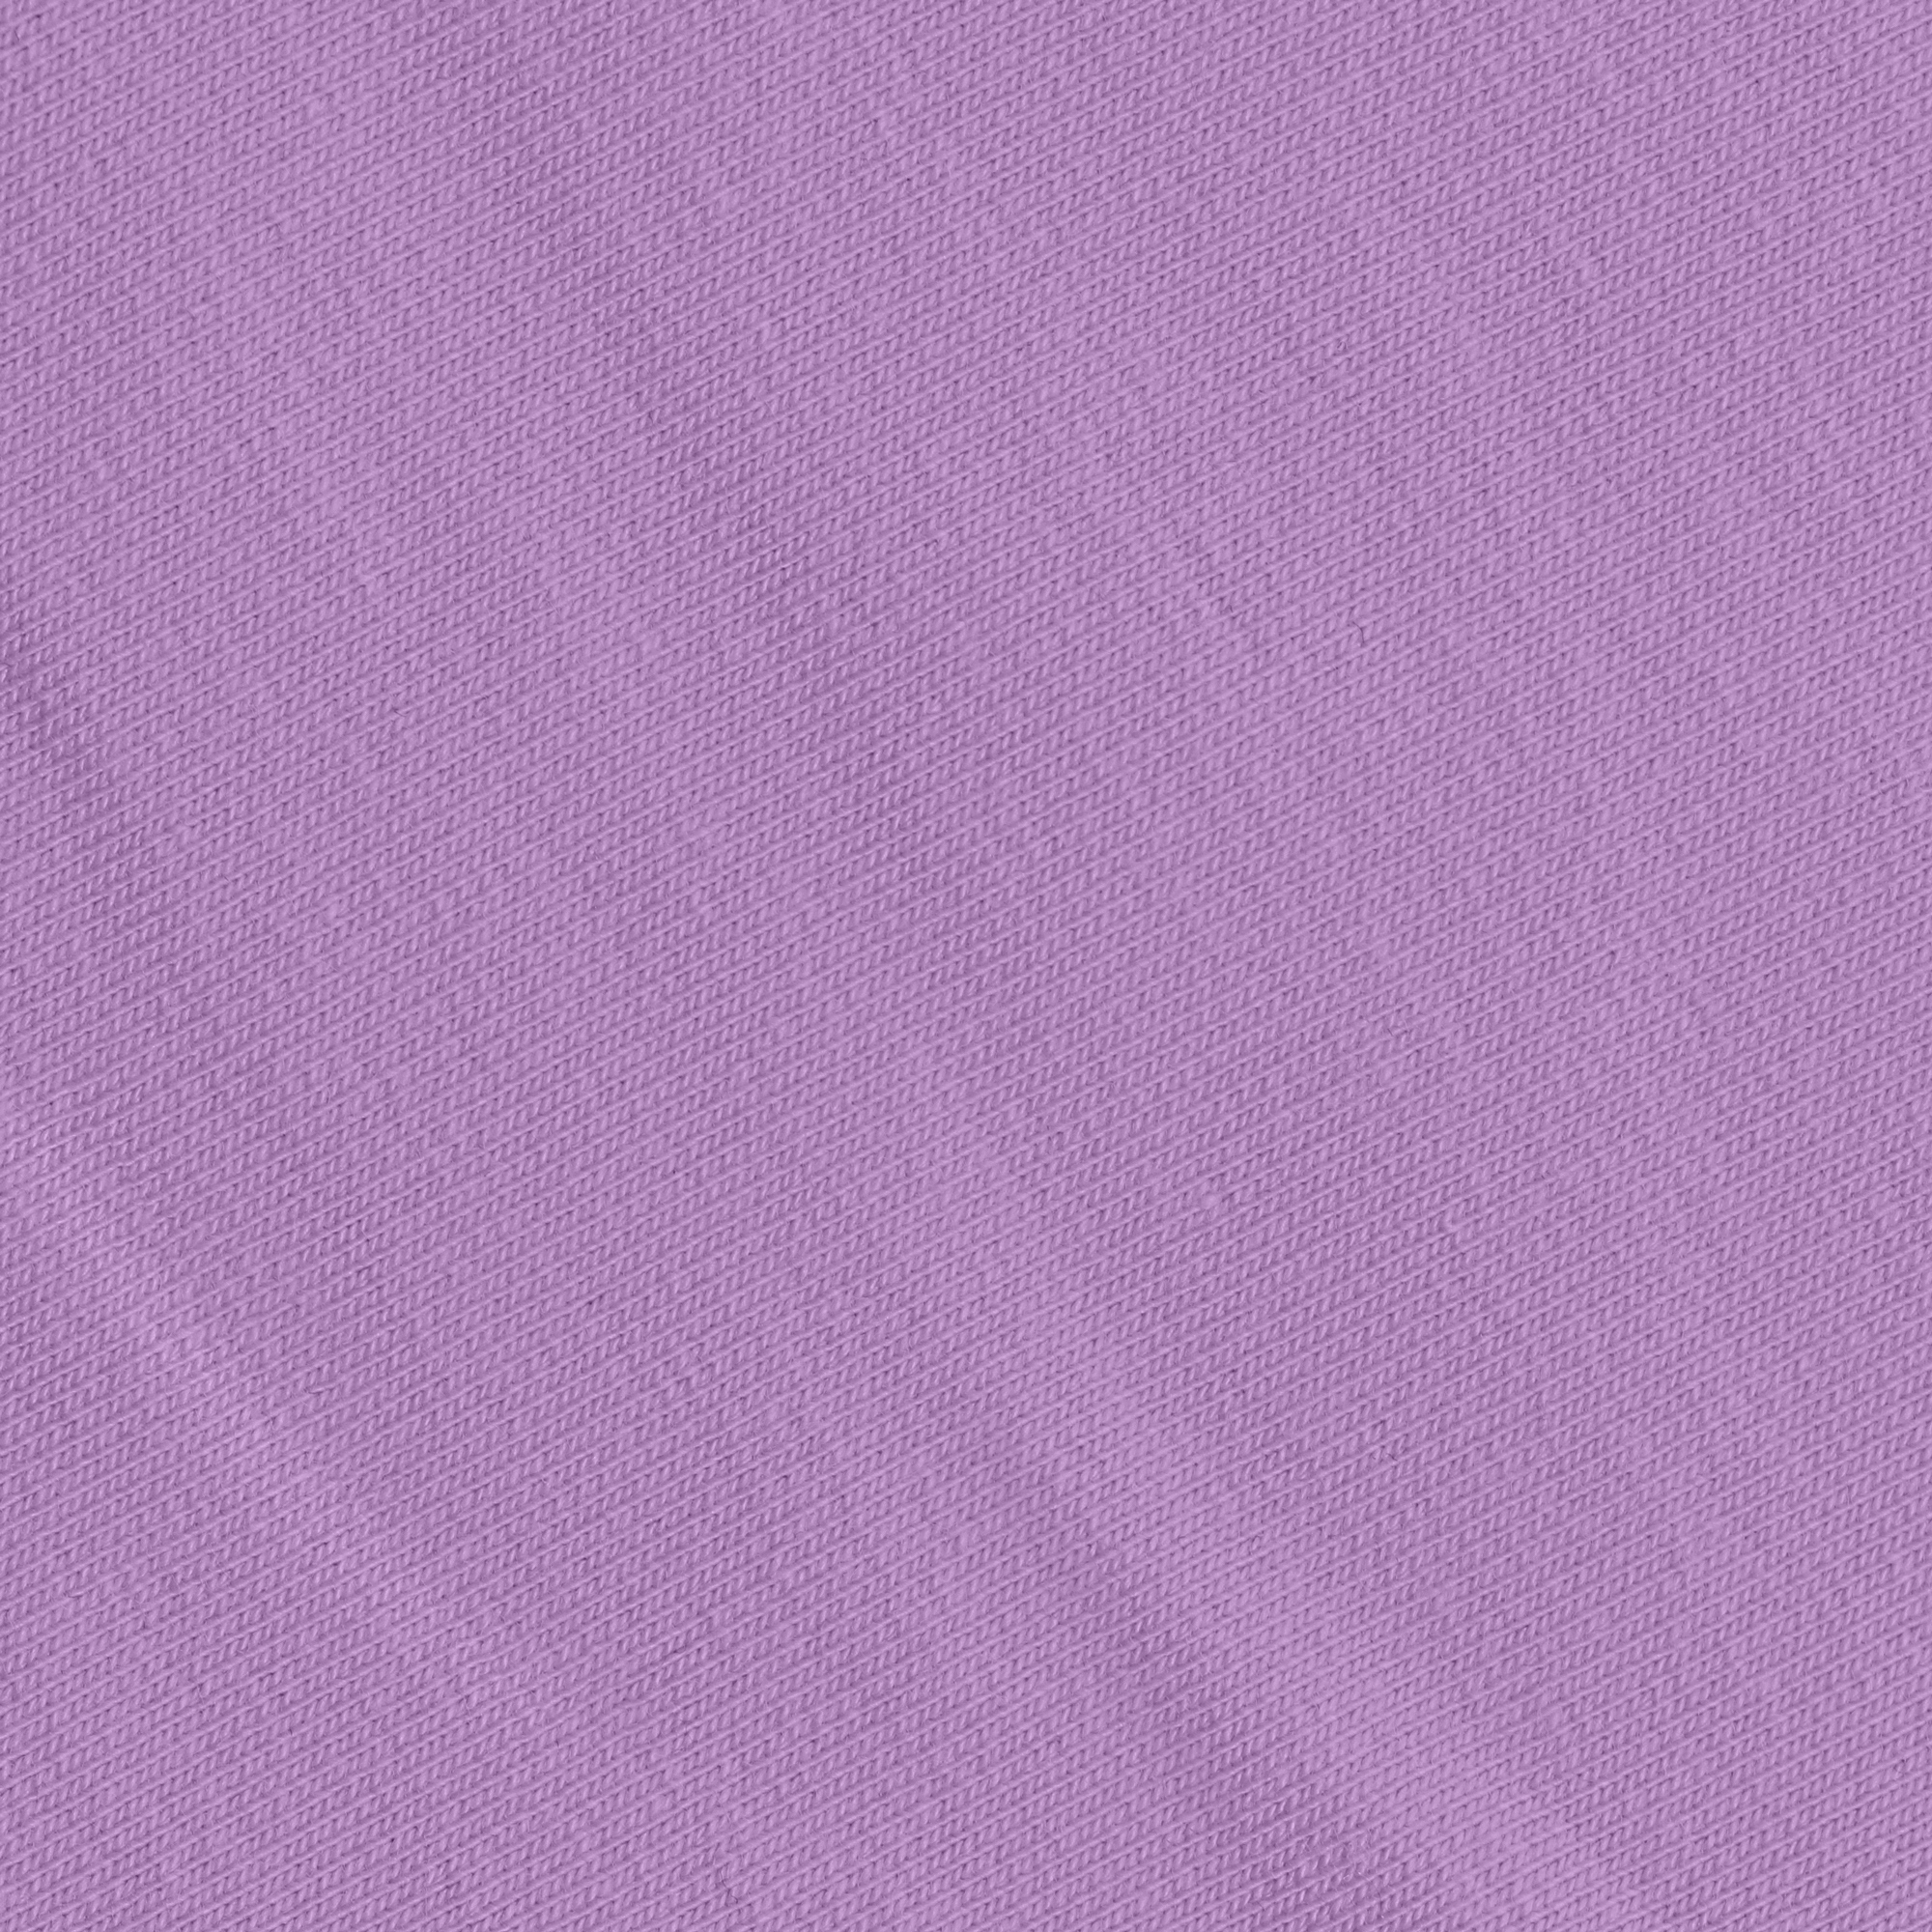 Брюки женские Birlik сиреневые, цвет сиреневый, размер M - фото 2